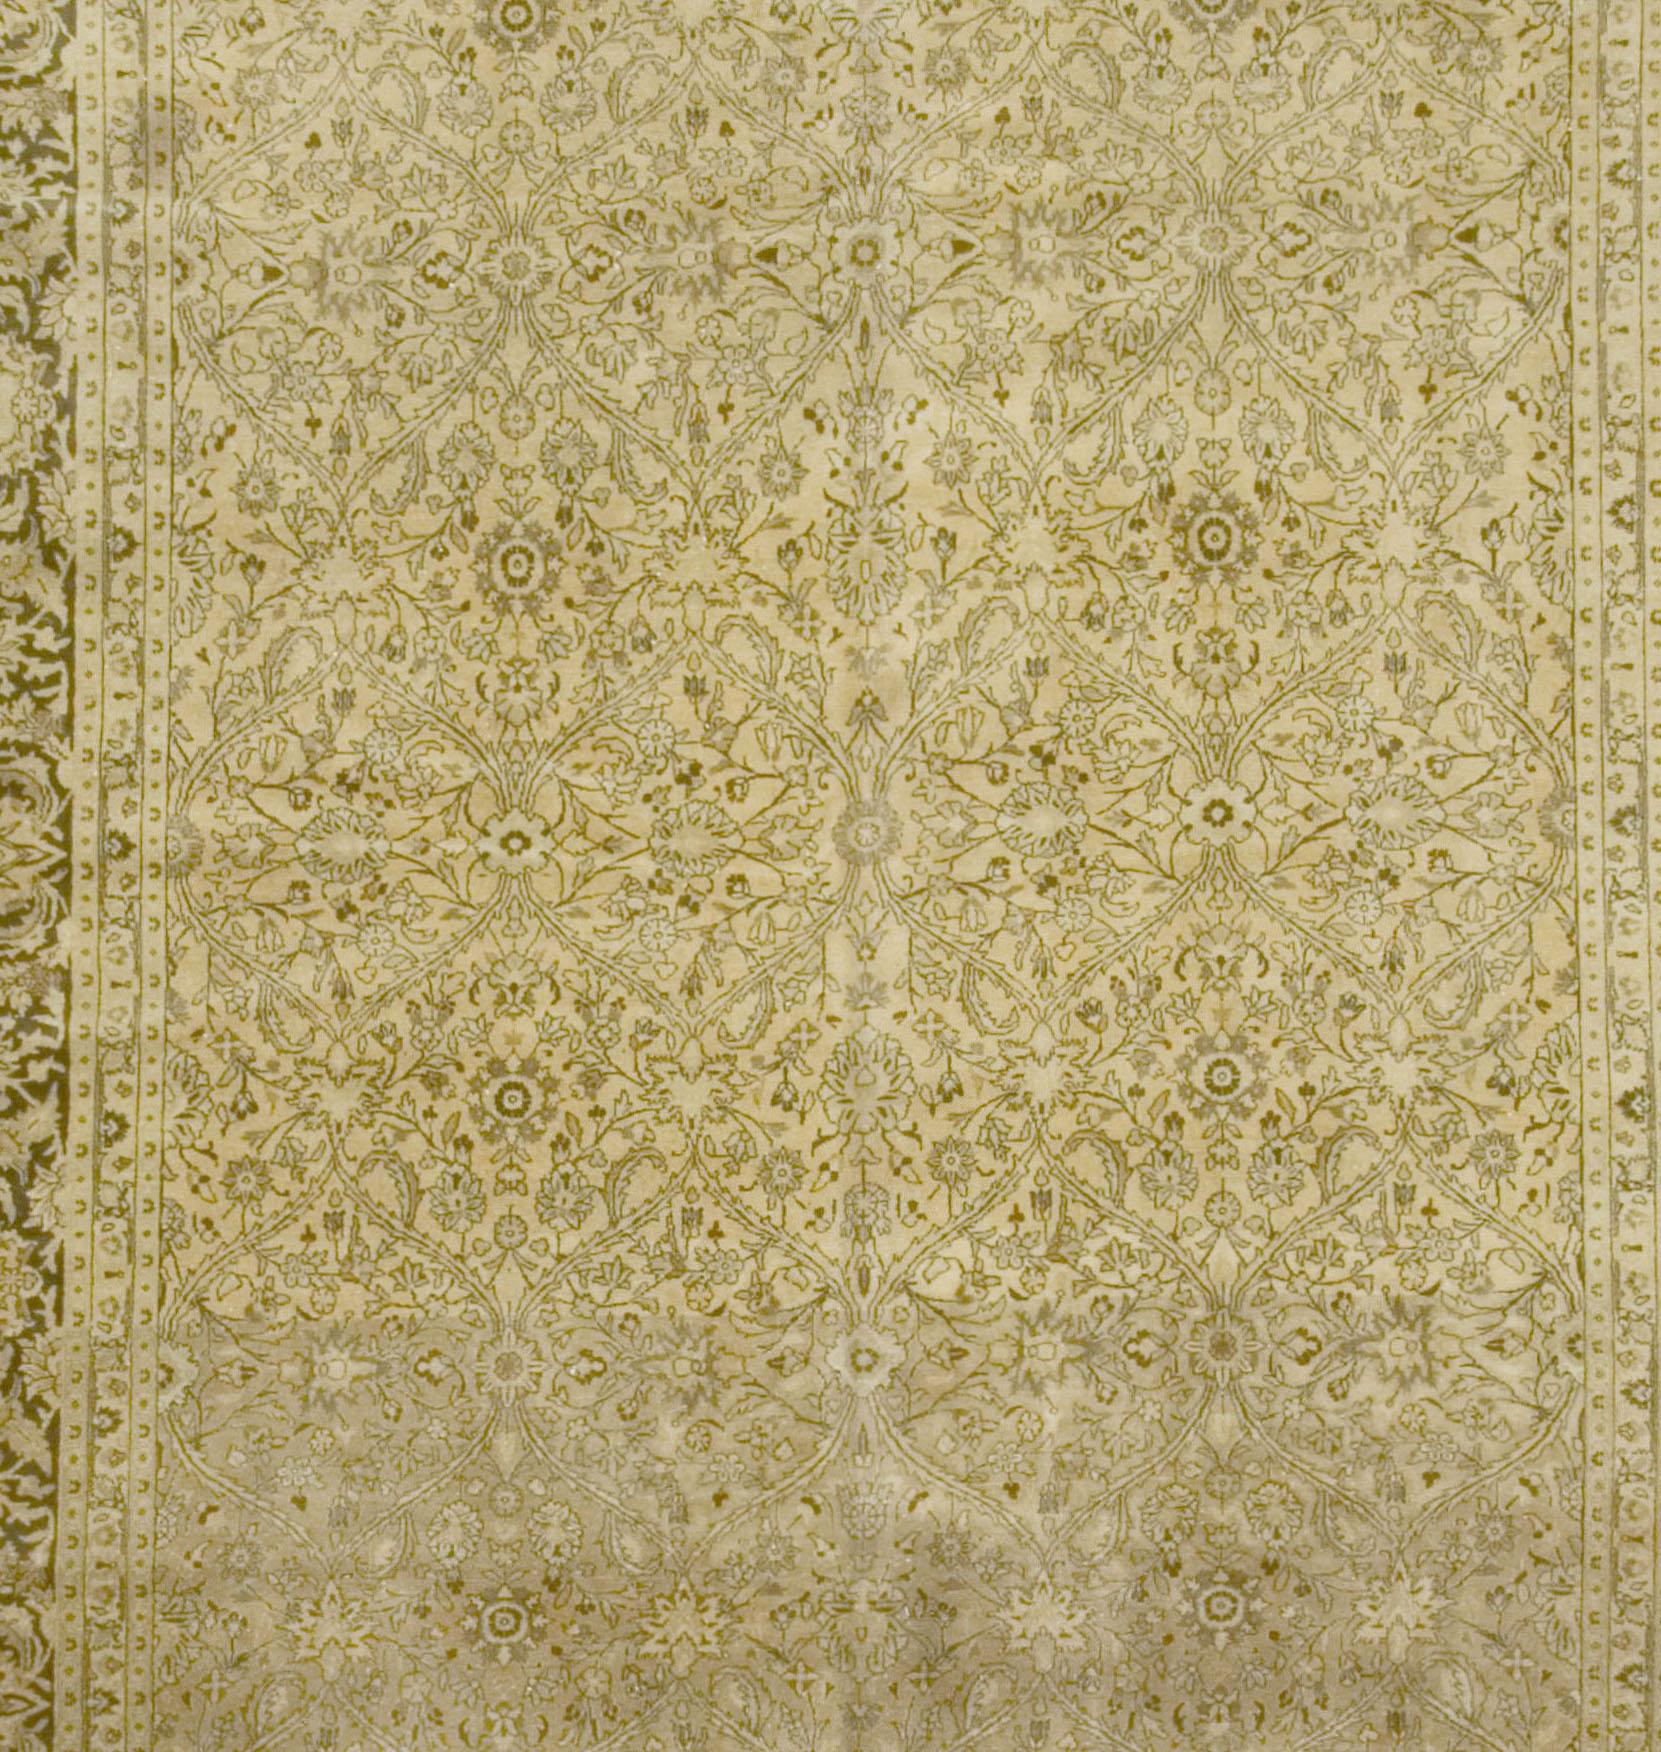 Antiker persischer Meshad-Teppich, um 1900, 9'7 x 13'2. Auf diesem antiken Meshad-Teppich aus Persien breiten sich elegante kurvige und florale Muster über das goldene Mittelfeld aus. Eine dunkle kastanienbraune Bordüre mit cremefarbenen botanischen